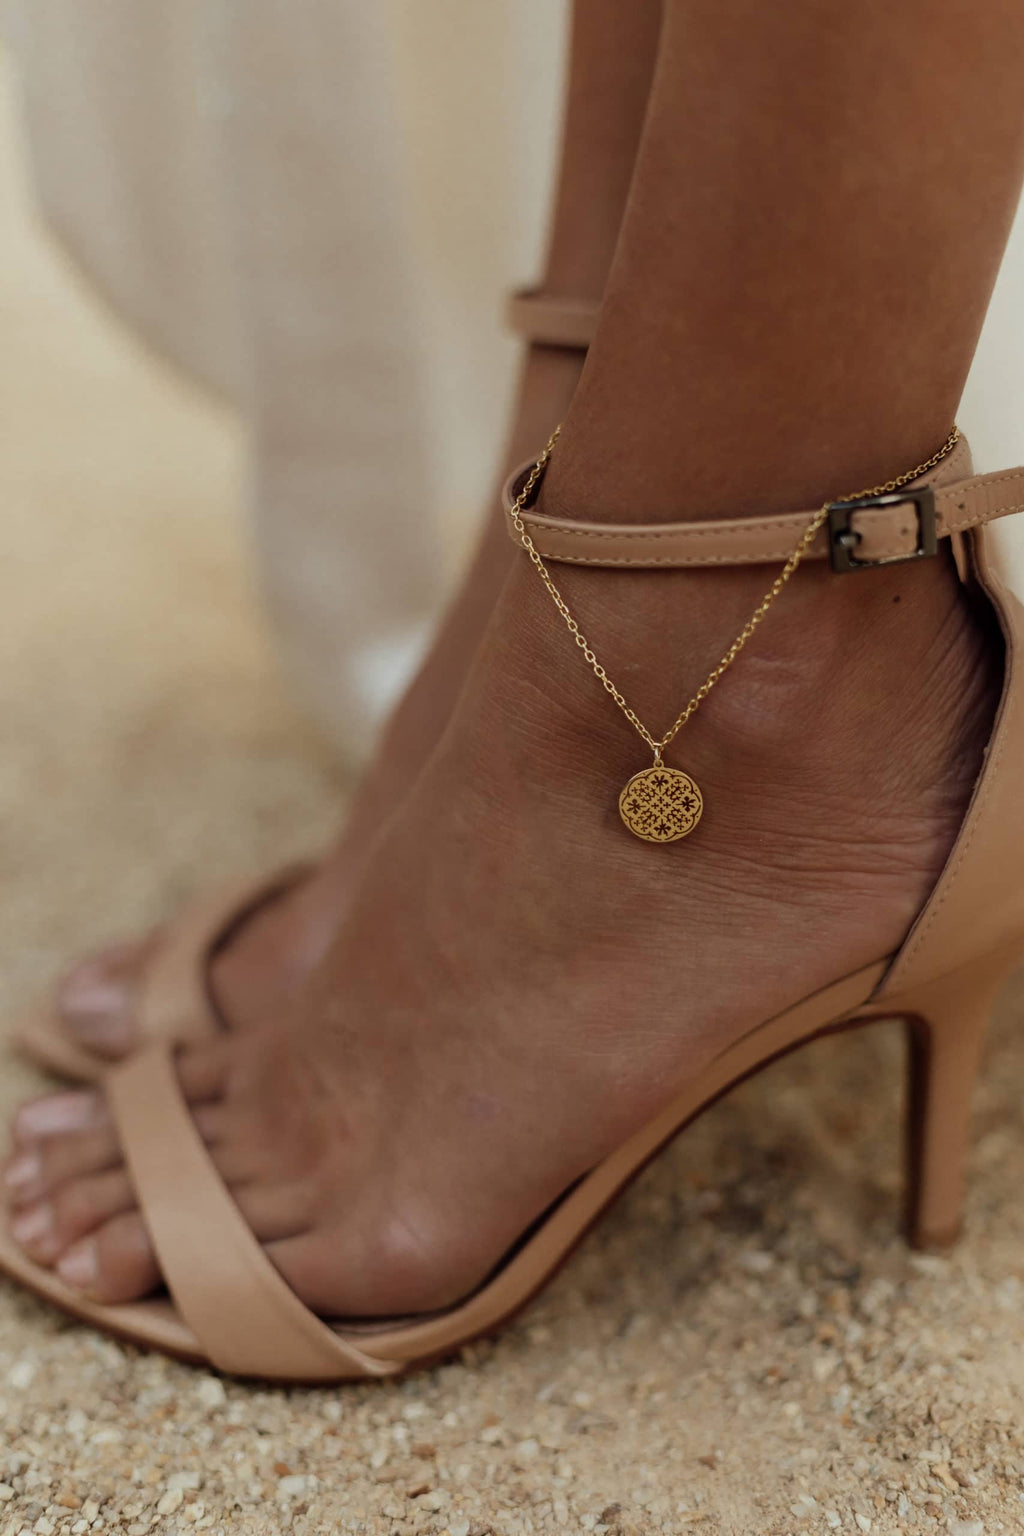 Camel stilettos bracelet detail ✓ Comfortable mid heel pumps